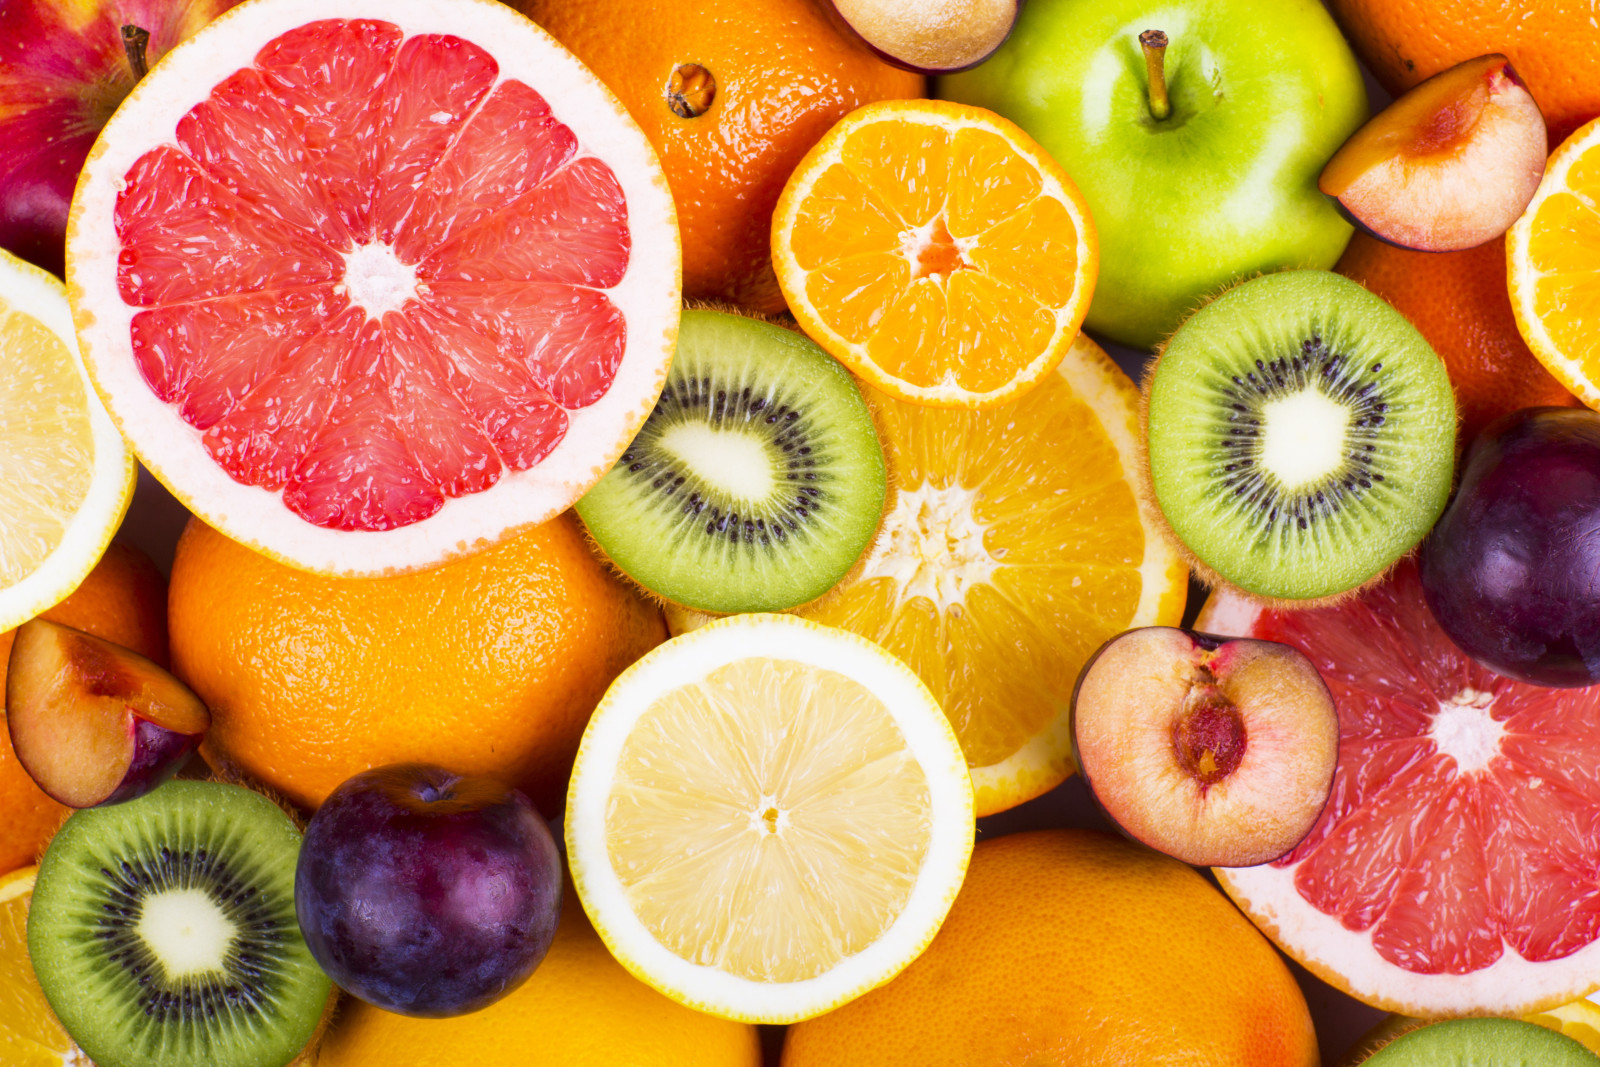 장과, 신선한, 오렌지, 사과, 키위, 과일, 그레이프 프루트, 과일